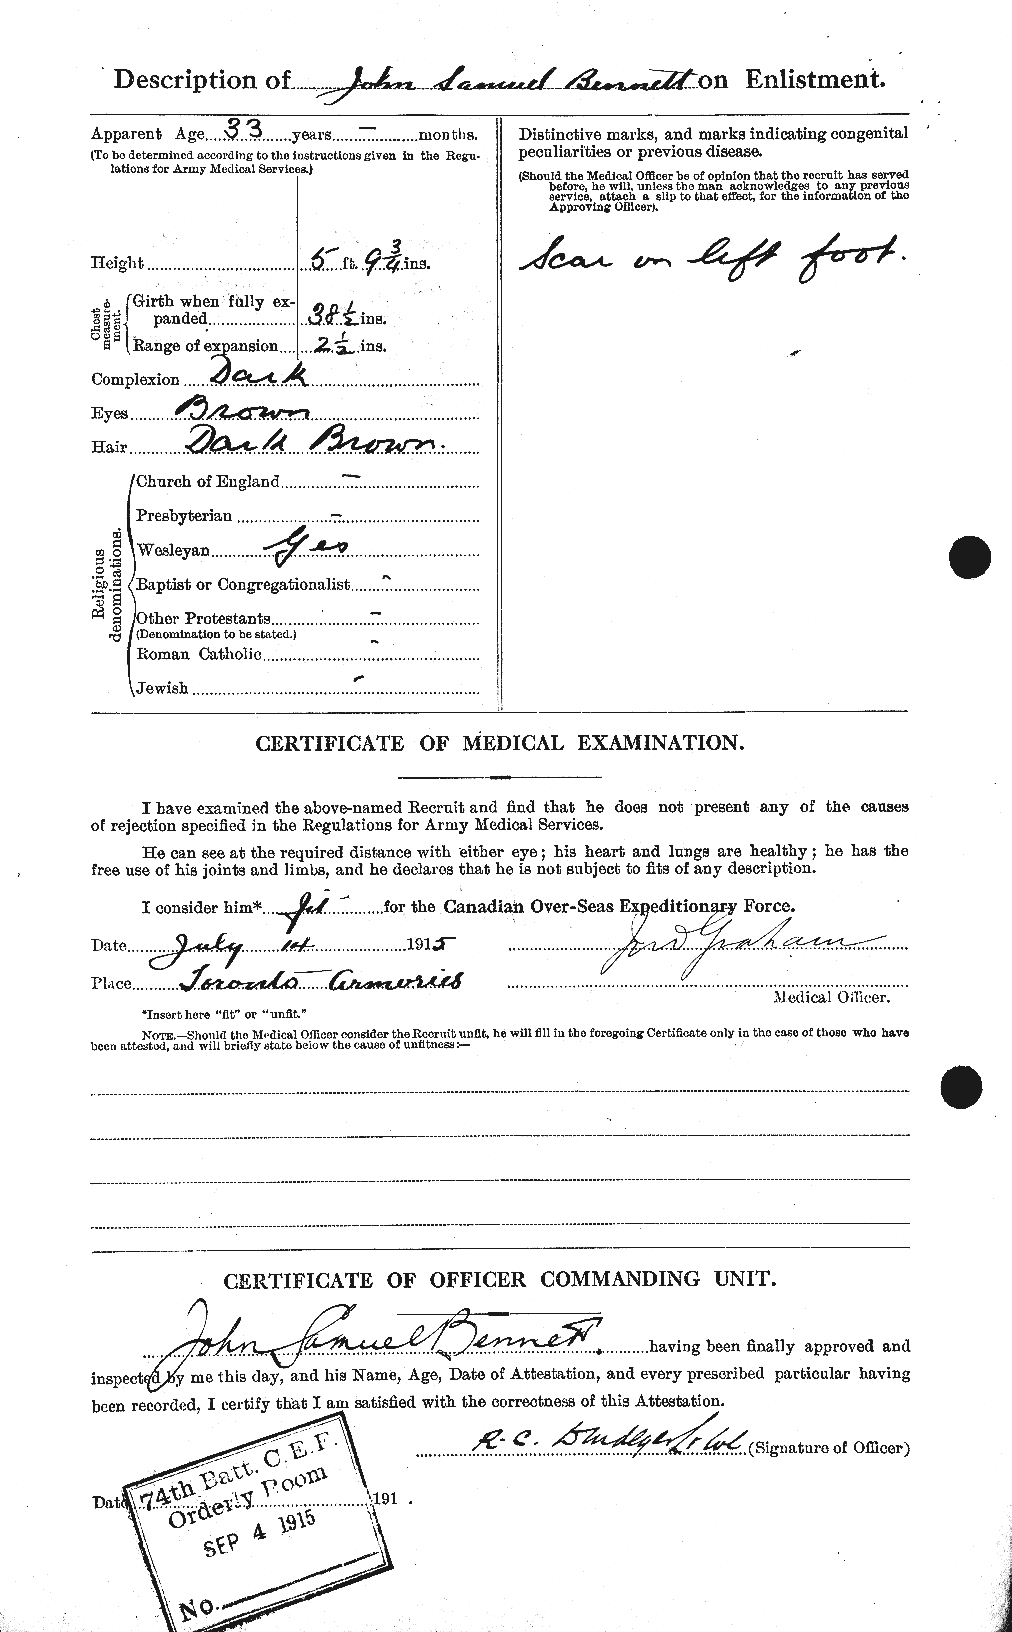 Dossiers du Personnel de la Première Guerre mondiale - CEC 238615b